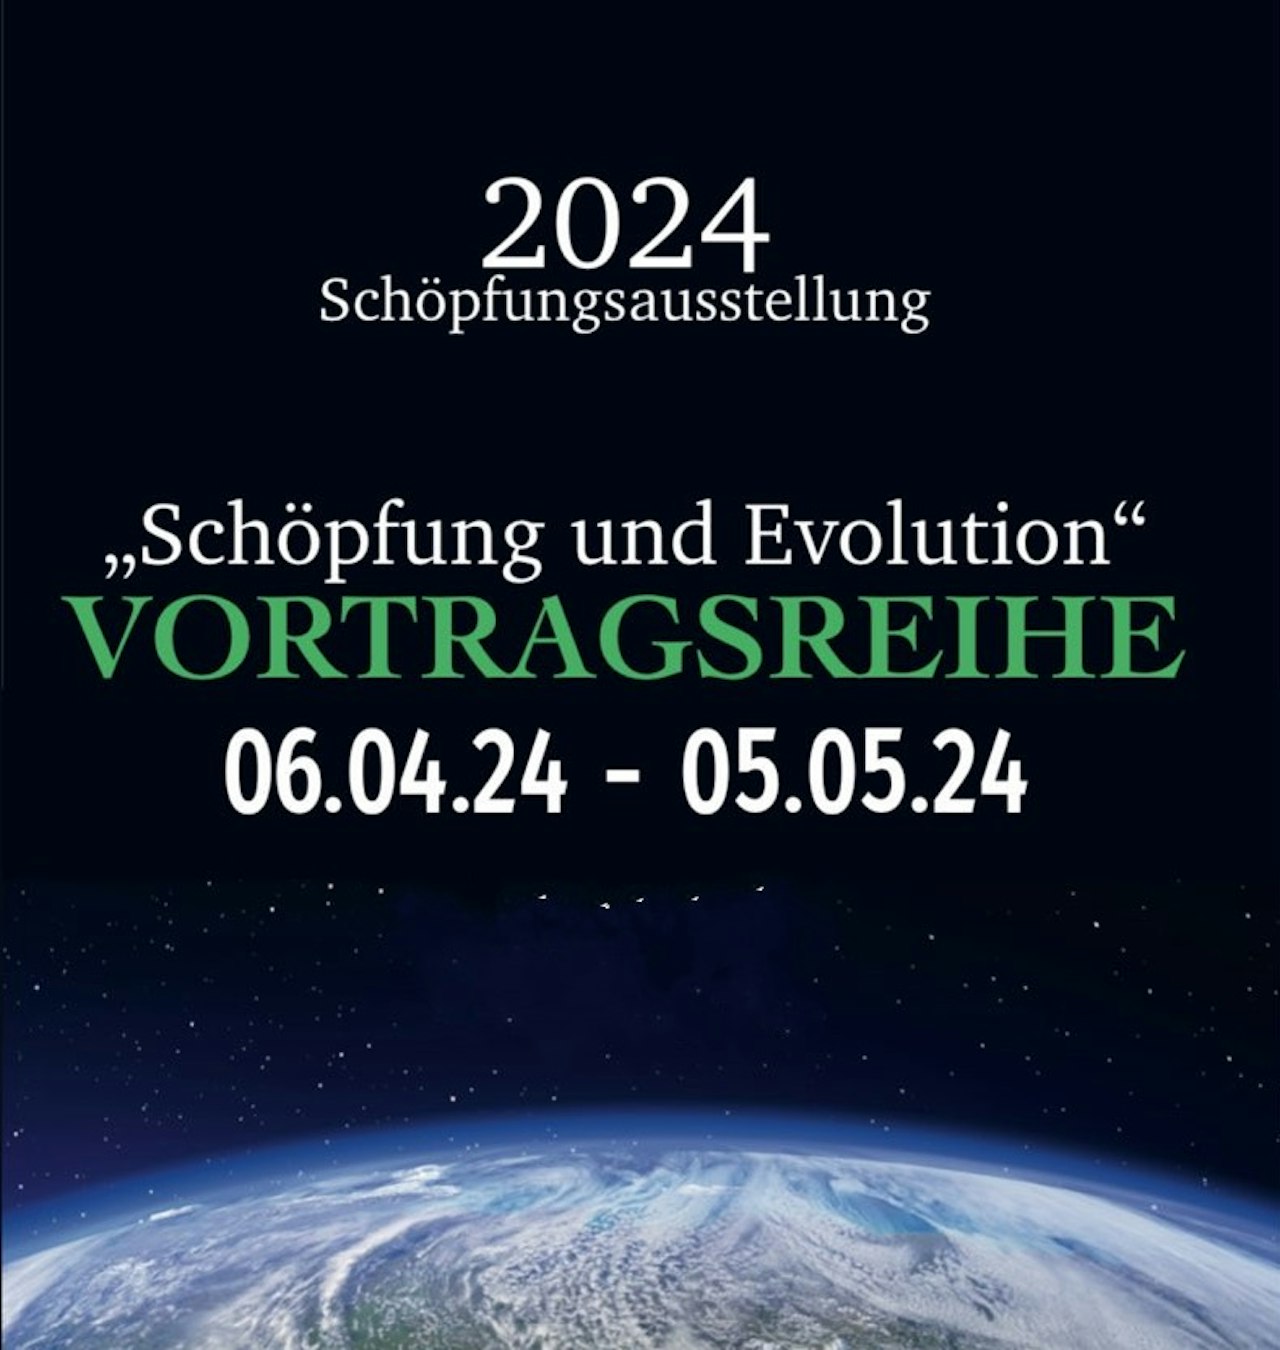 Vortragsreihe Schöpfung und Evolution 2024